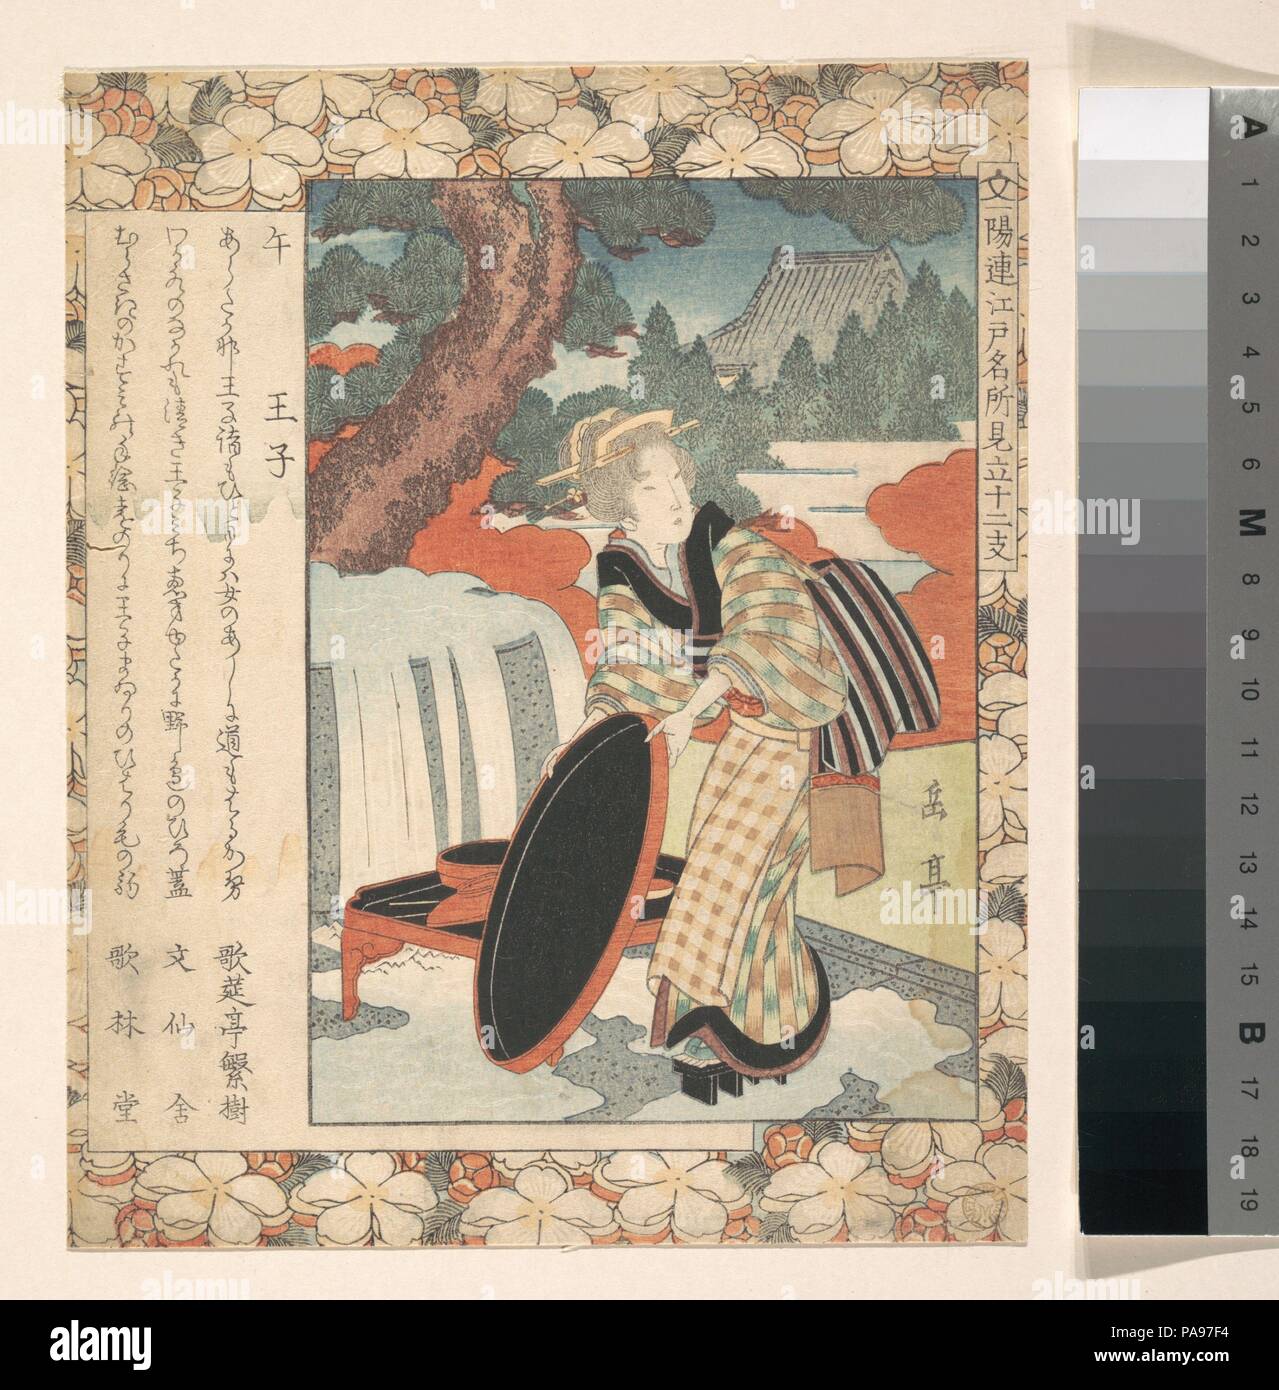 L'impression. Artiste : Yashima Gakutei (japonais, 1786 ?-1868). Culture : le Japon. Dimensions : 8 1/4 x 6 3/4 in. (21 x 17,1 cm). Date : ca. 1830. Musée : Metropolitan Museum of Art, New York, USA. Banque D'Images